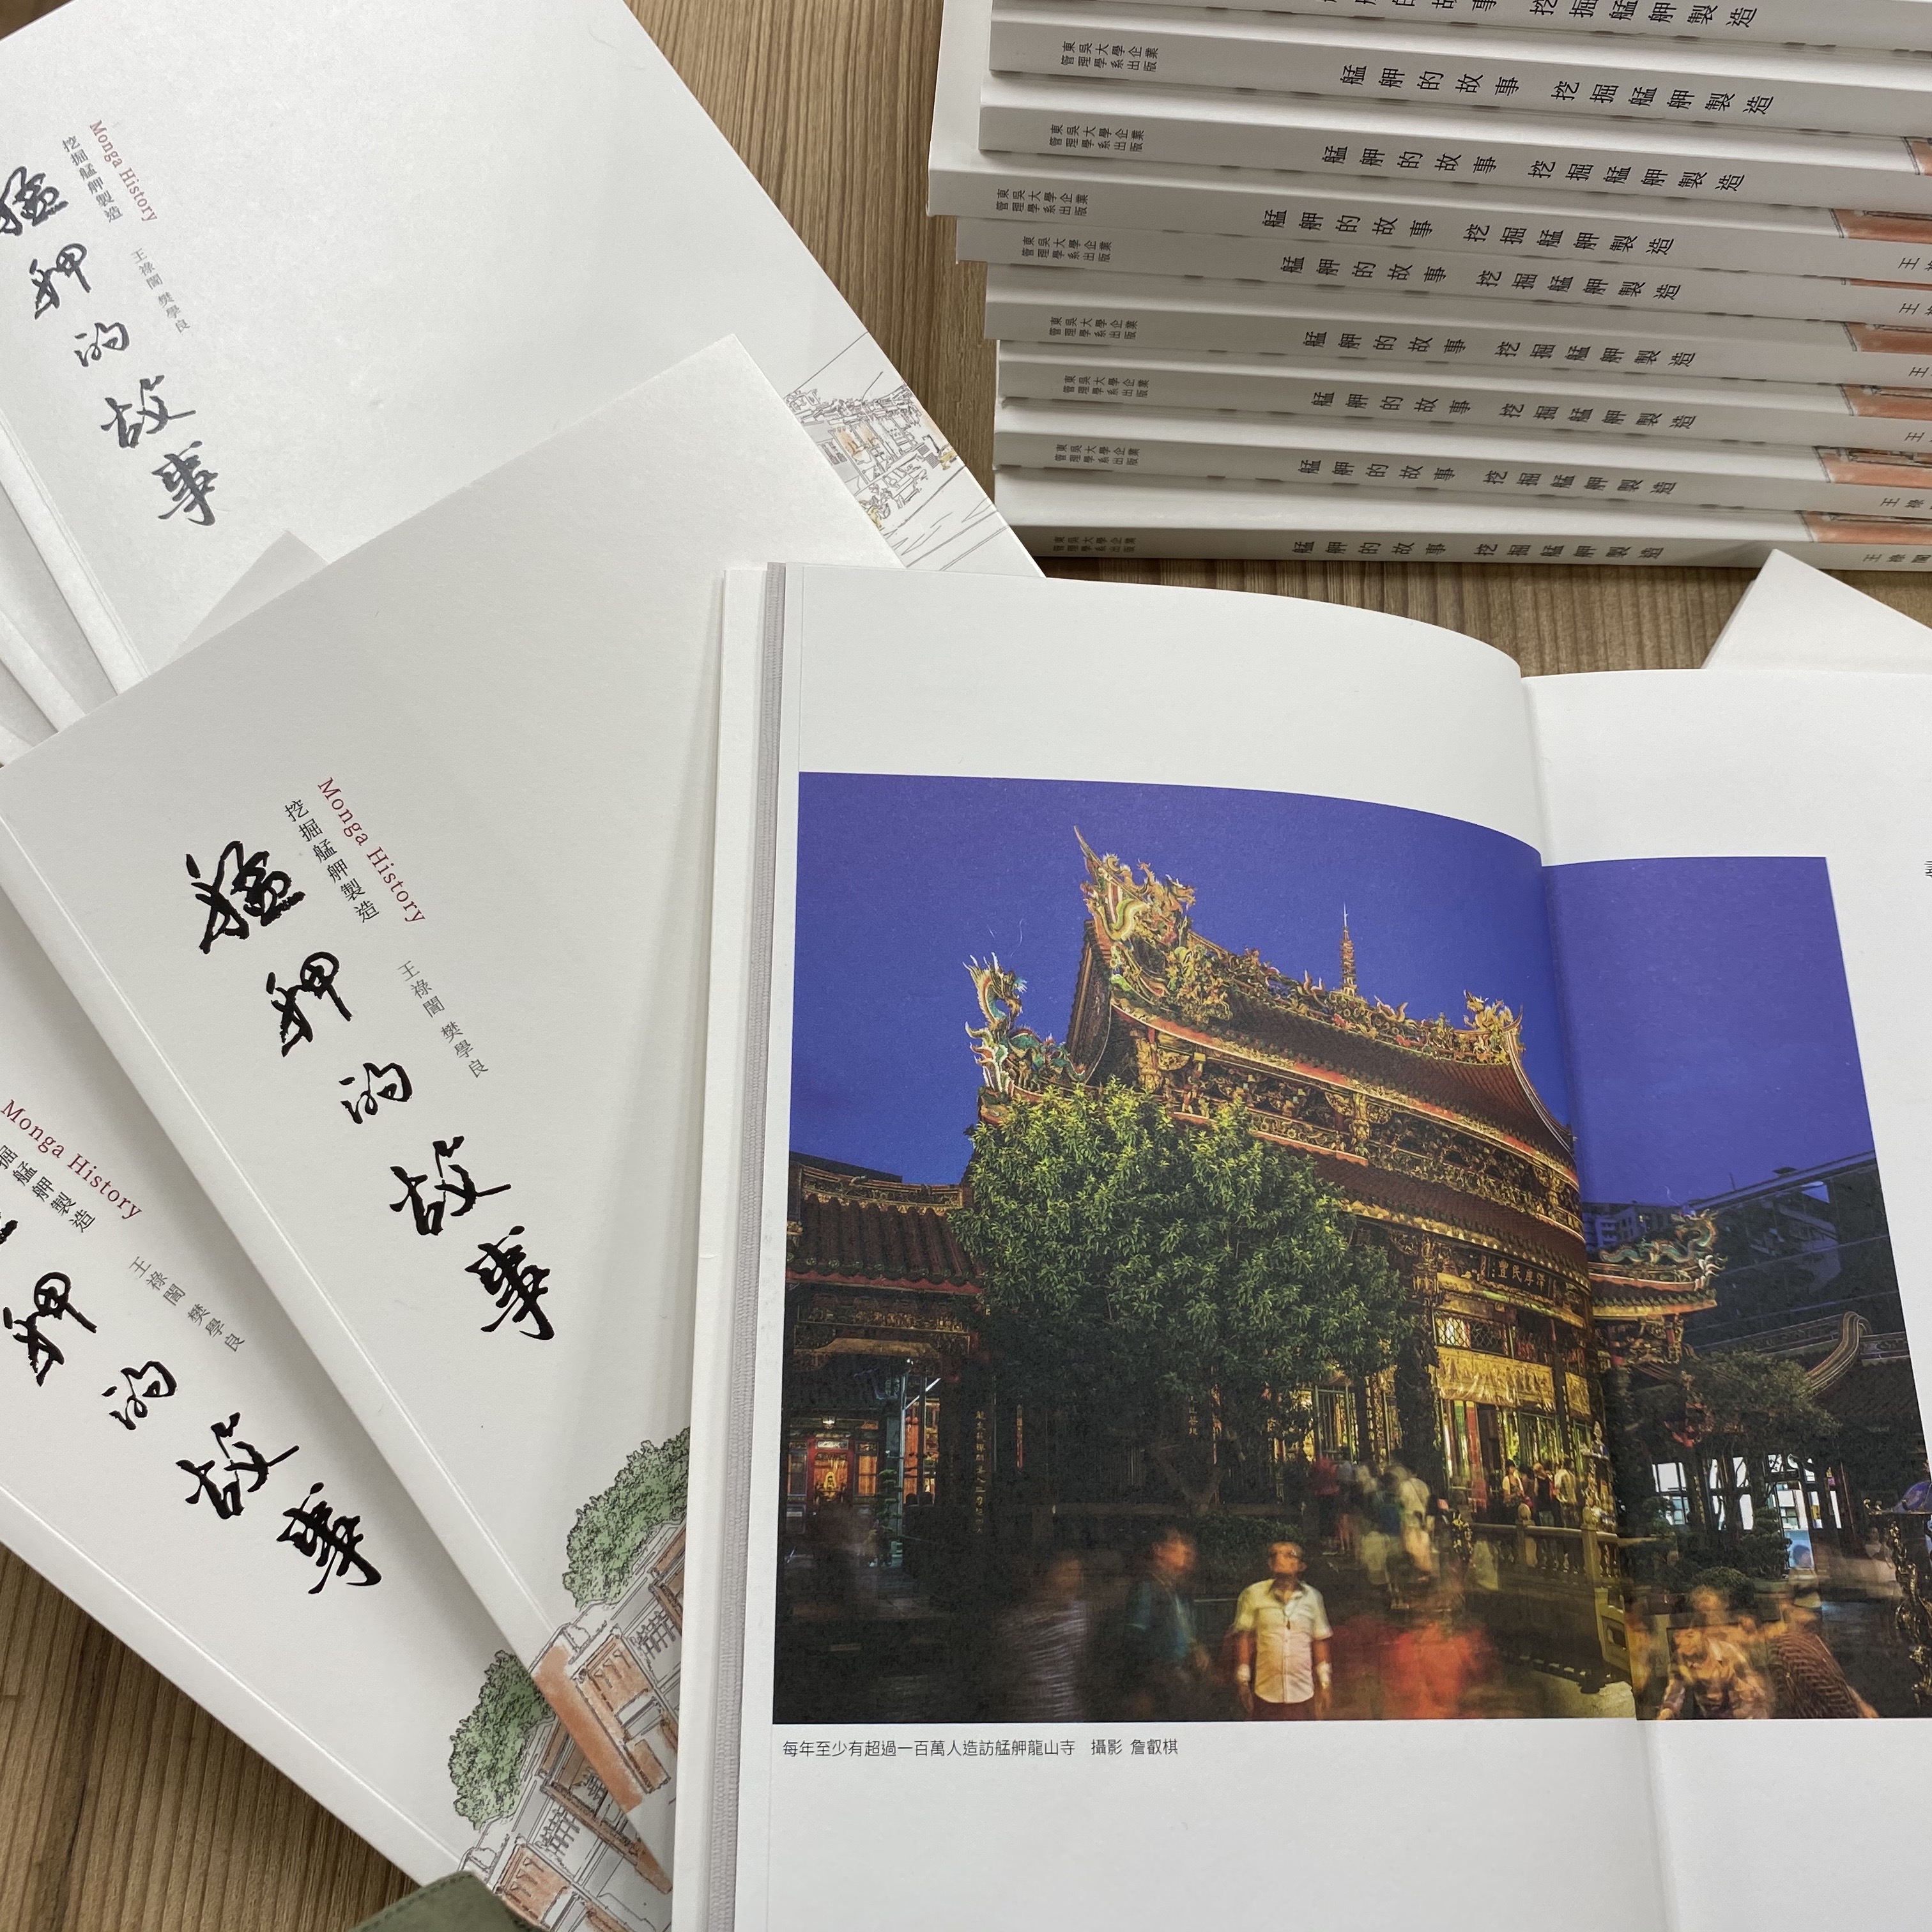 王祿誾董事長、樊學良老師出版新著《艋舺的故事》